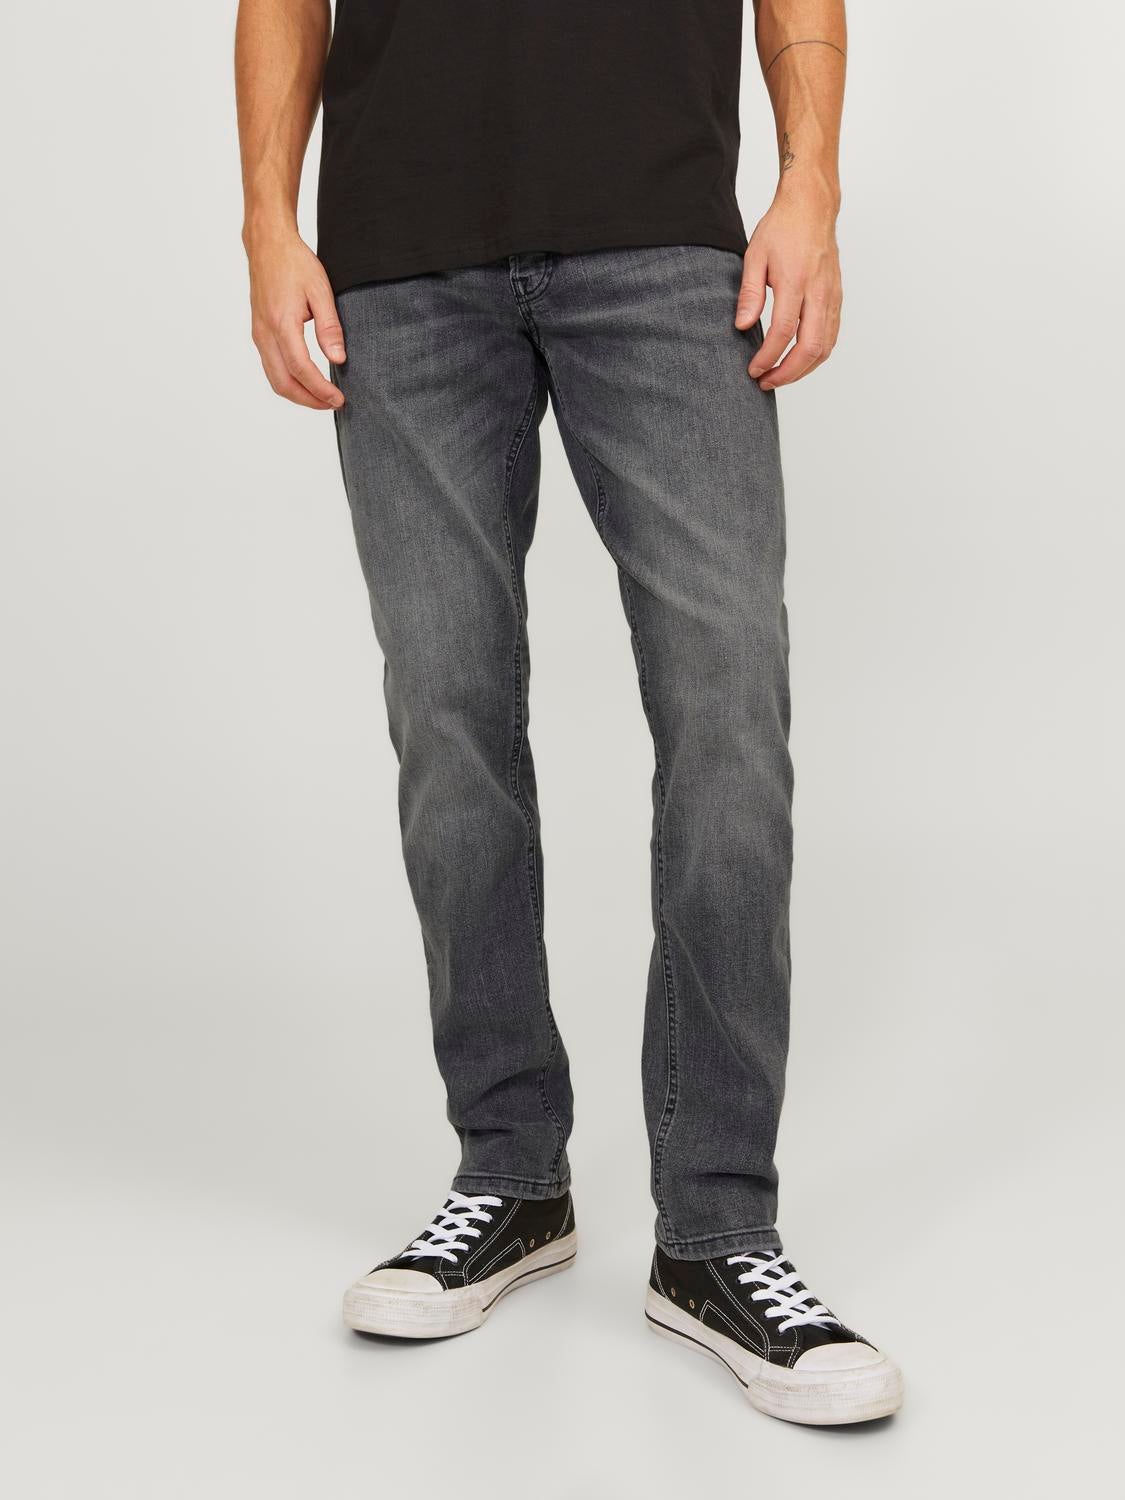 JJIGLENN JJORIGINAL MF 039 Slim fit jeans with 50% discount 